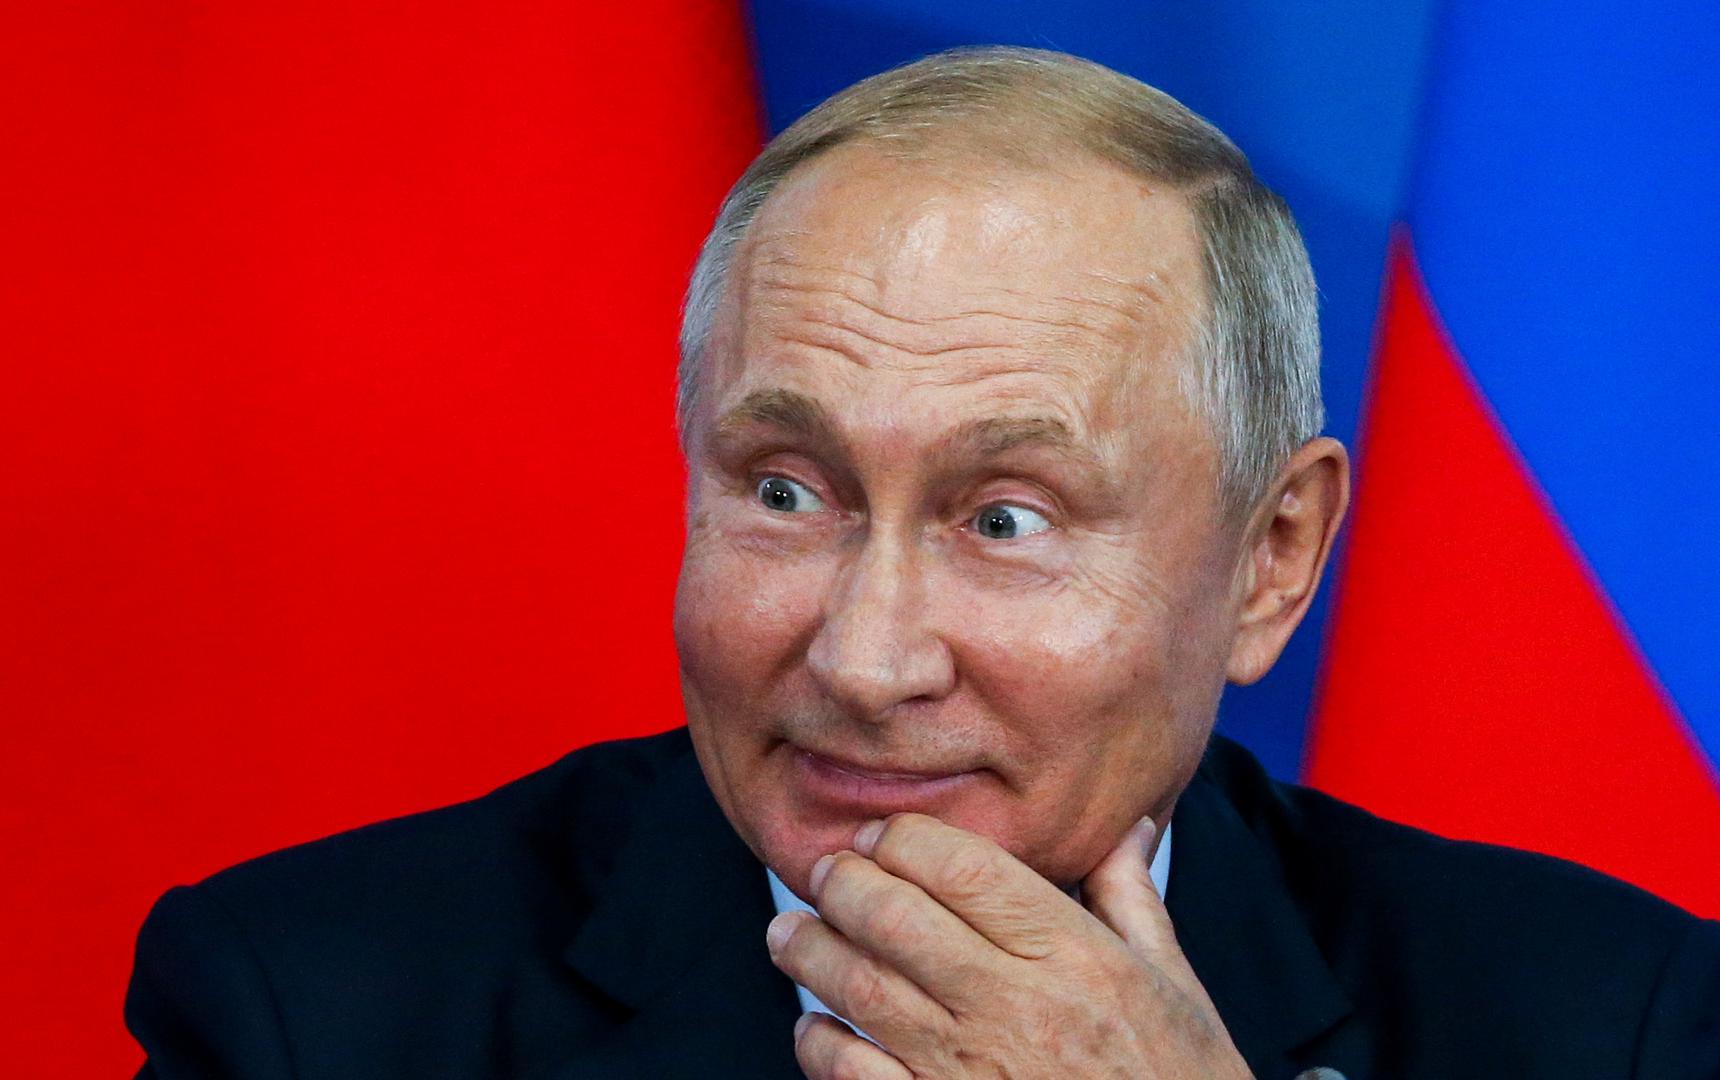 Ruski predsjednik Vladimir Putin povratkom je u predsjedničku fotelju počeo provoditi brzu modernizaciju ruske vojske, ne želeći sve svjetske krize prepustiti isključivo Amerikancima